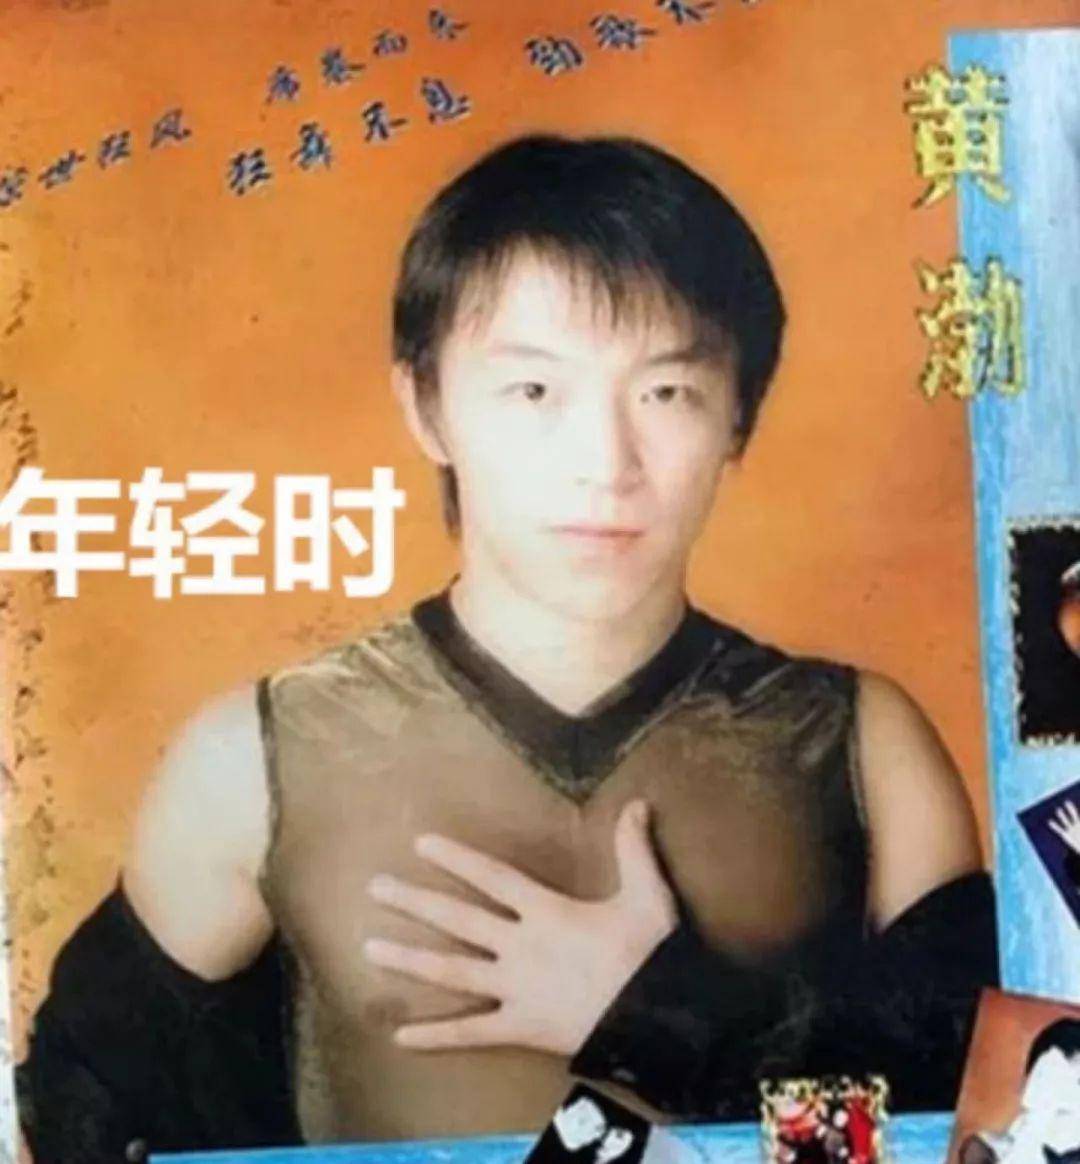 黄渤年轻时如果能帅些,他做驻场歌手和舞蹈教练的生涯也不会那么心酸